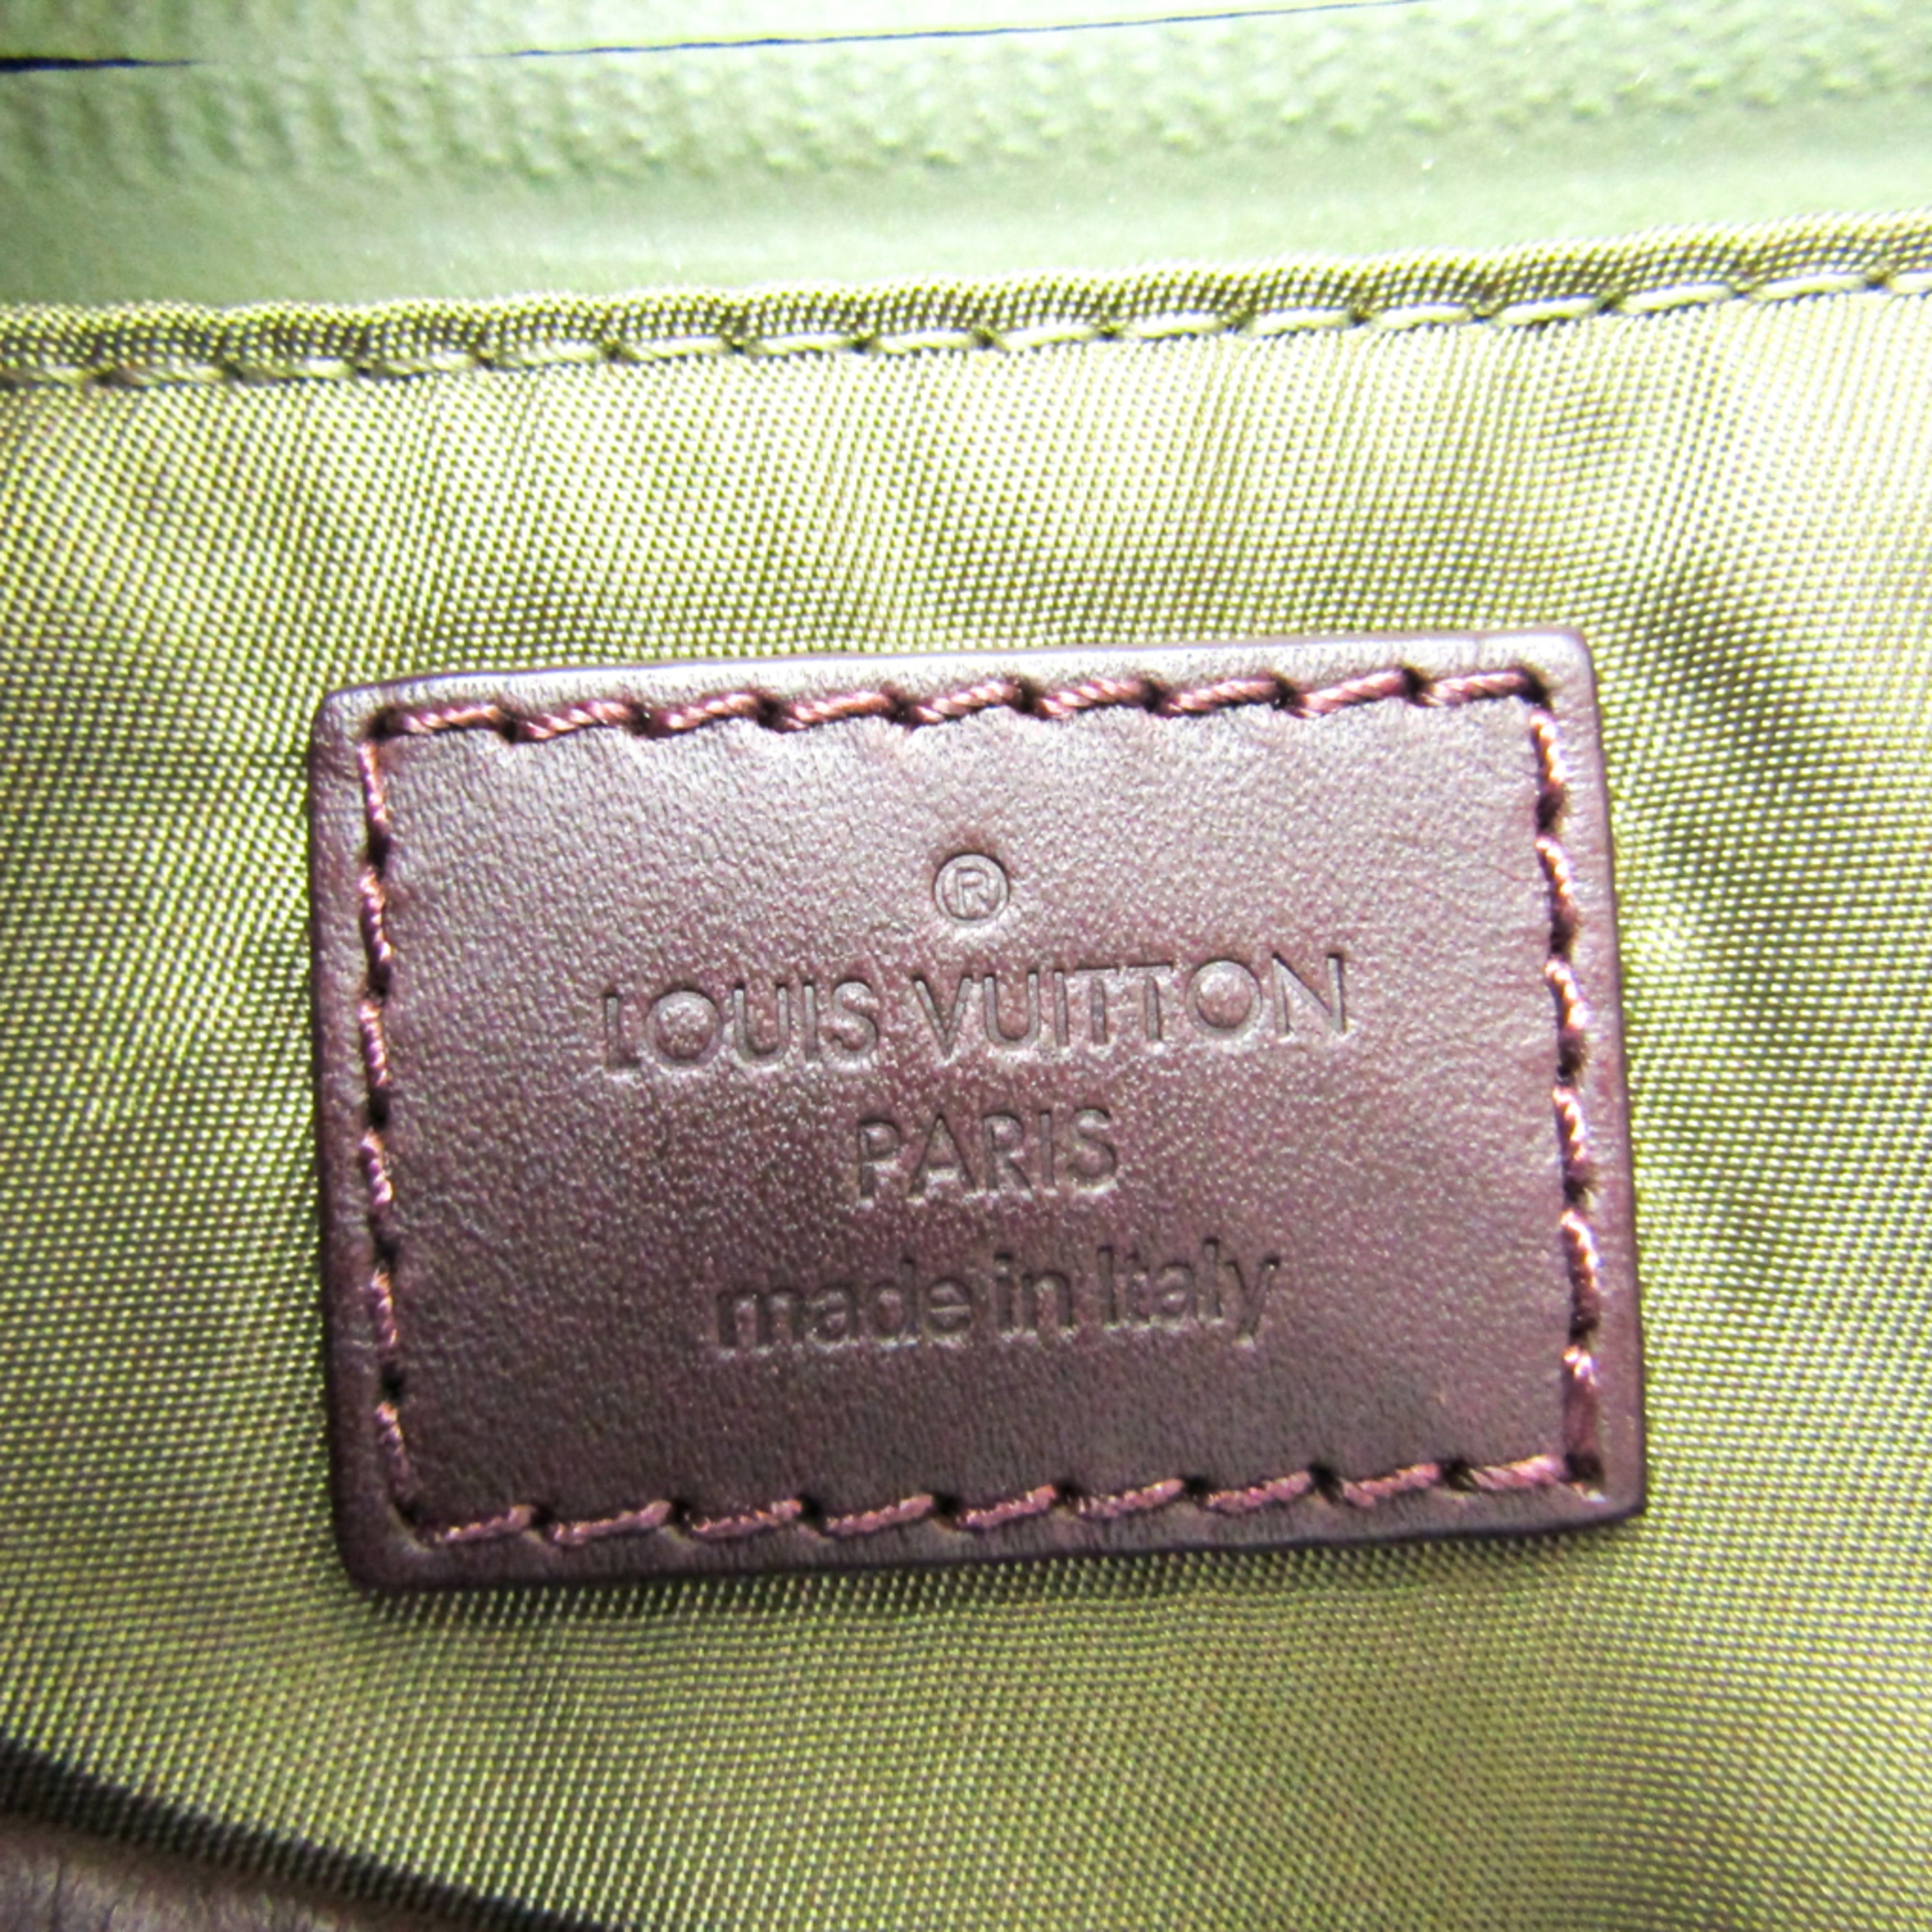 Louis Vuitton Damier Challenge N41239 Men's Shoulder Bag Fluorescent Yellow,Khaki